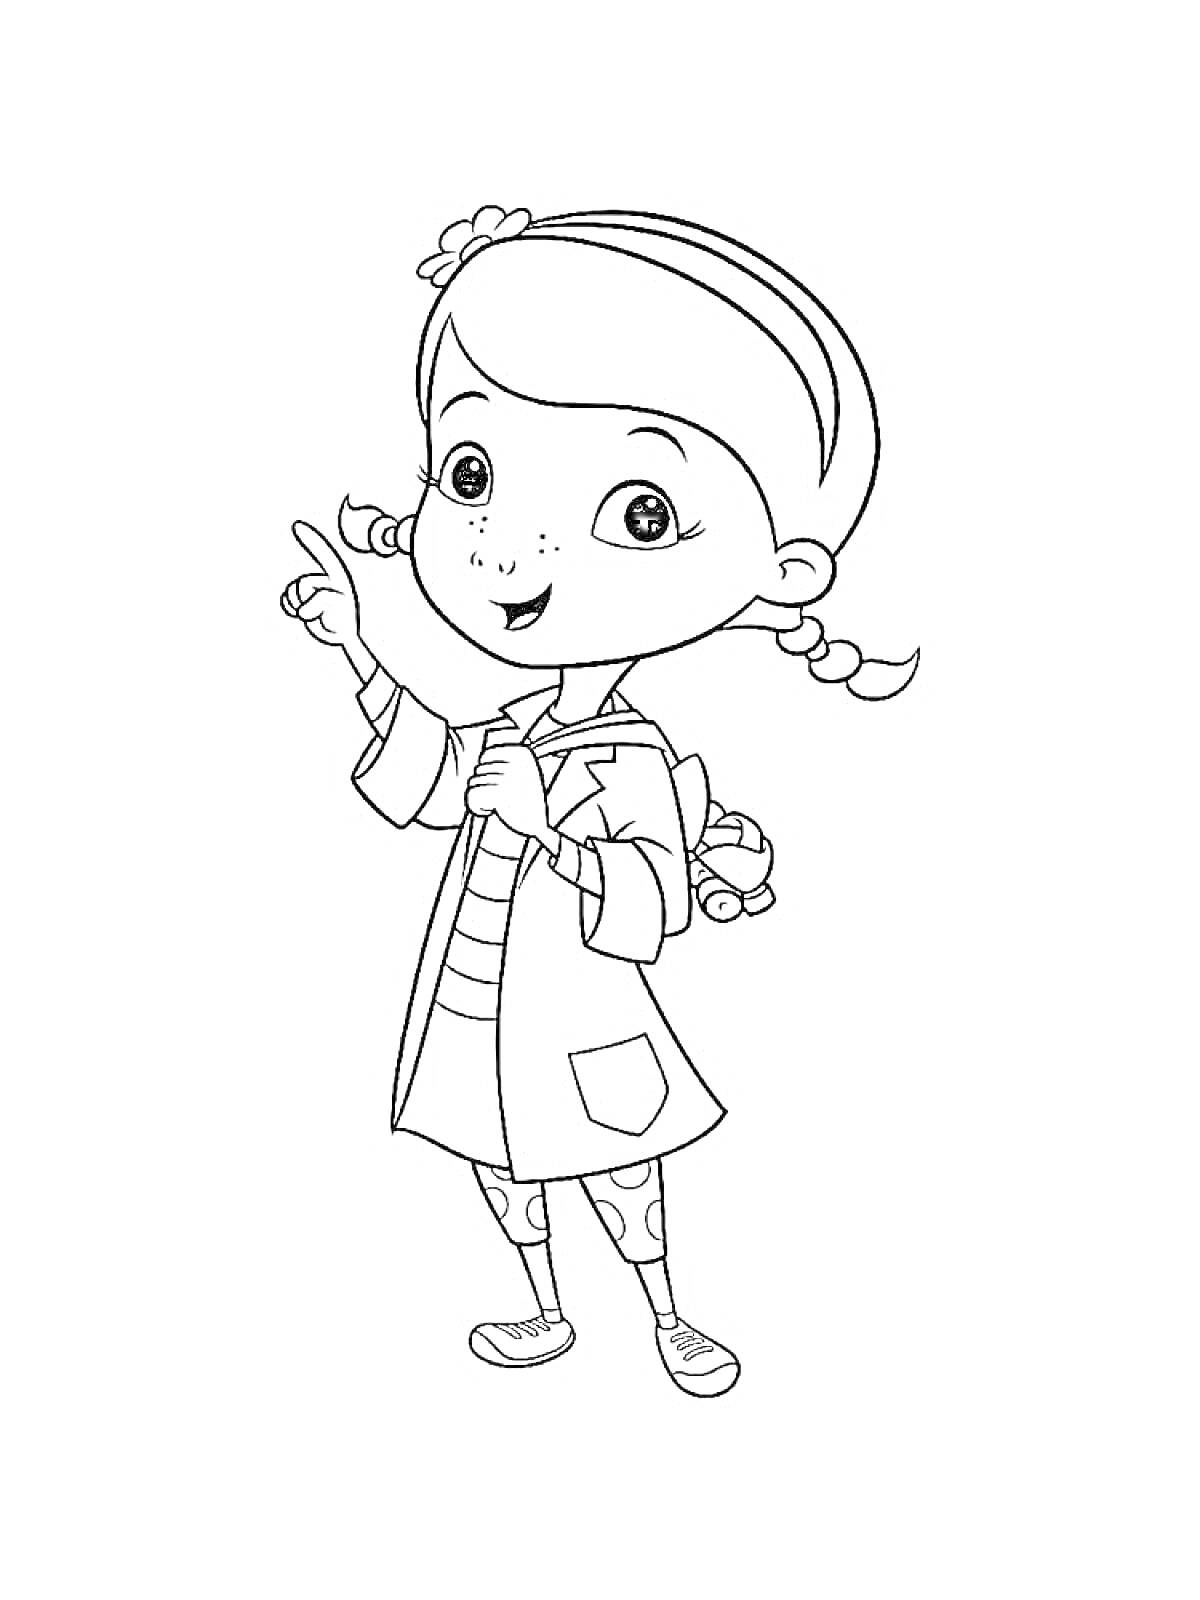 Девочка в докторском халате с поднятым пальцем, в рюкзаке, прически с косичками и цветком в волосах